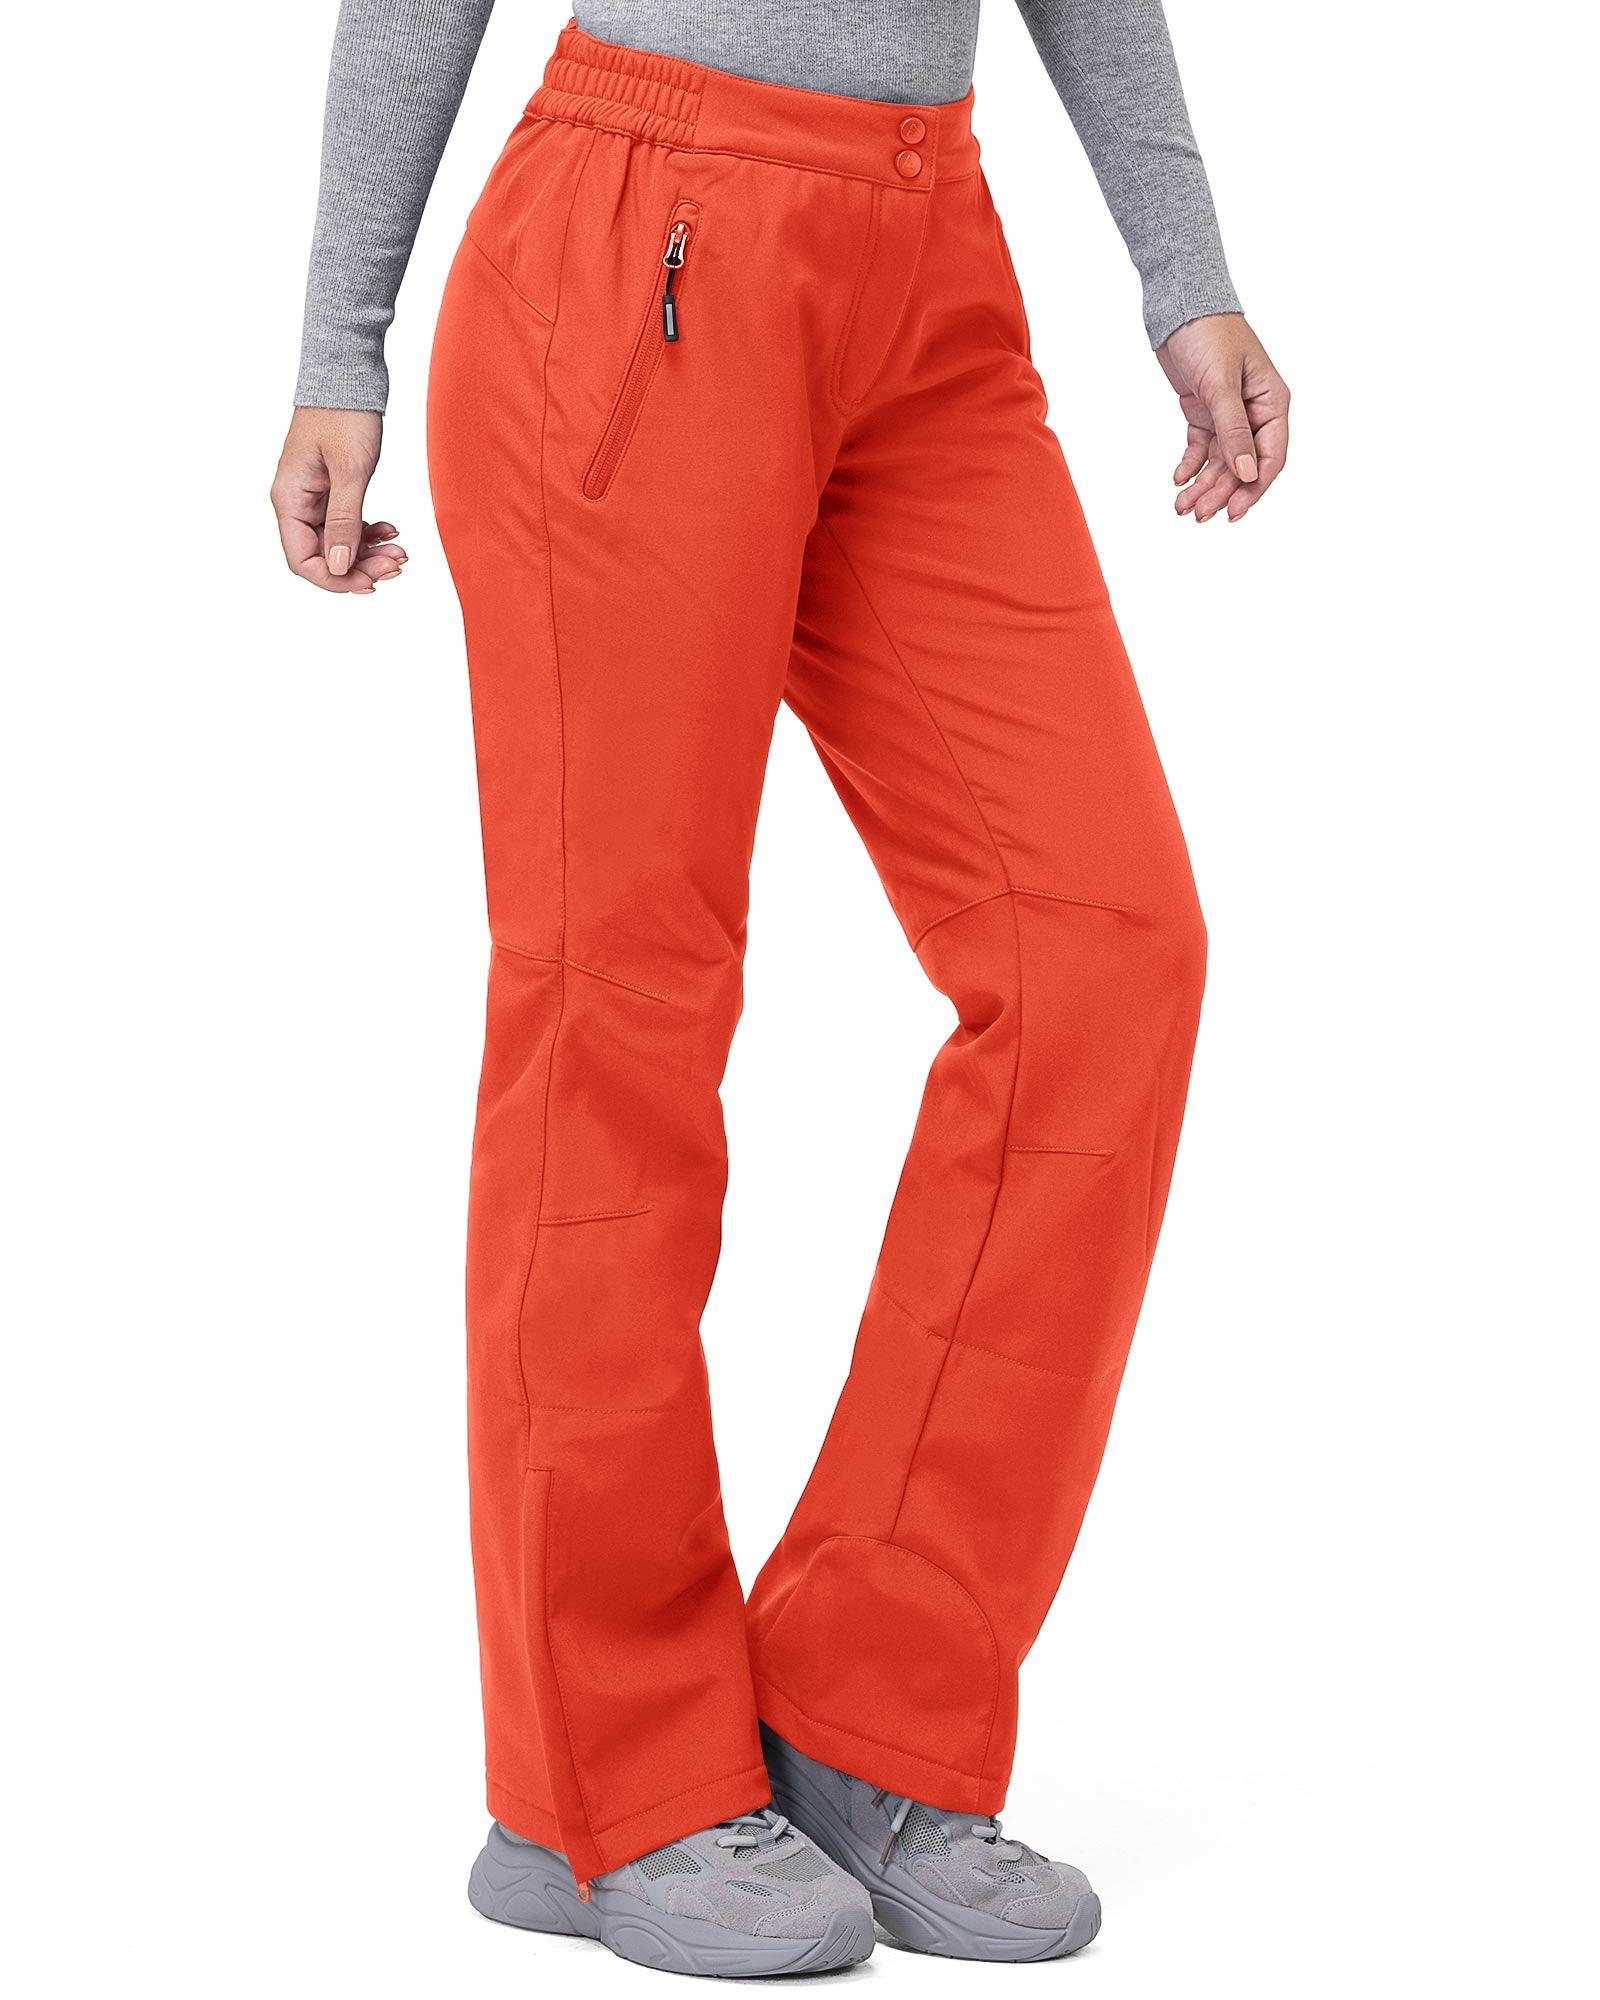 Buy DAFENP Women's Walking Ski Trousers Softshell Fleece Lined